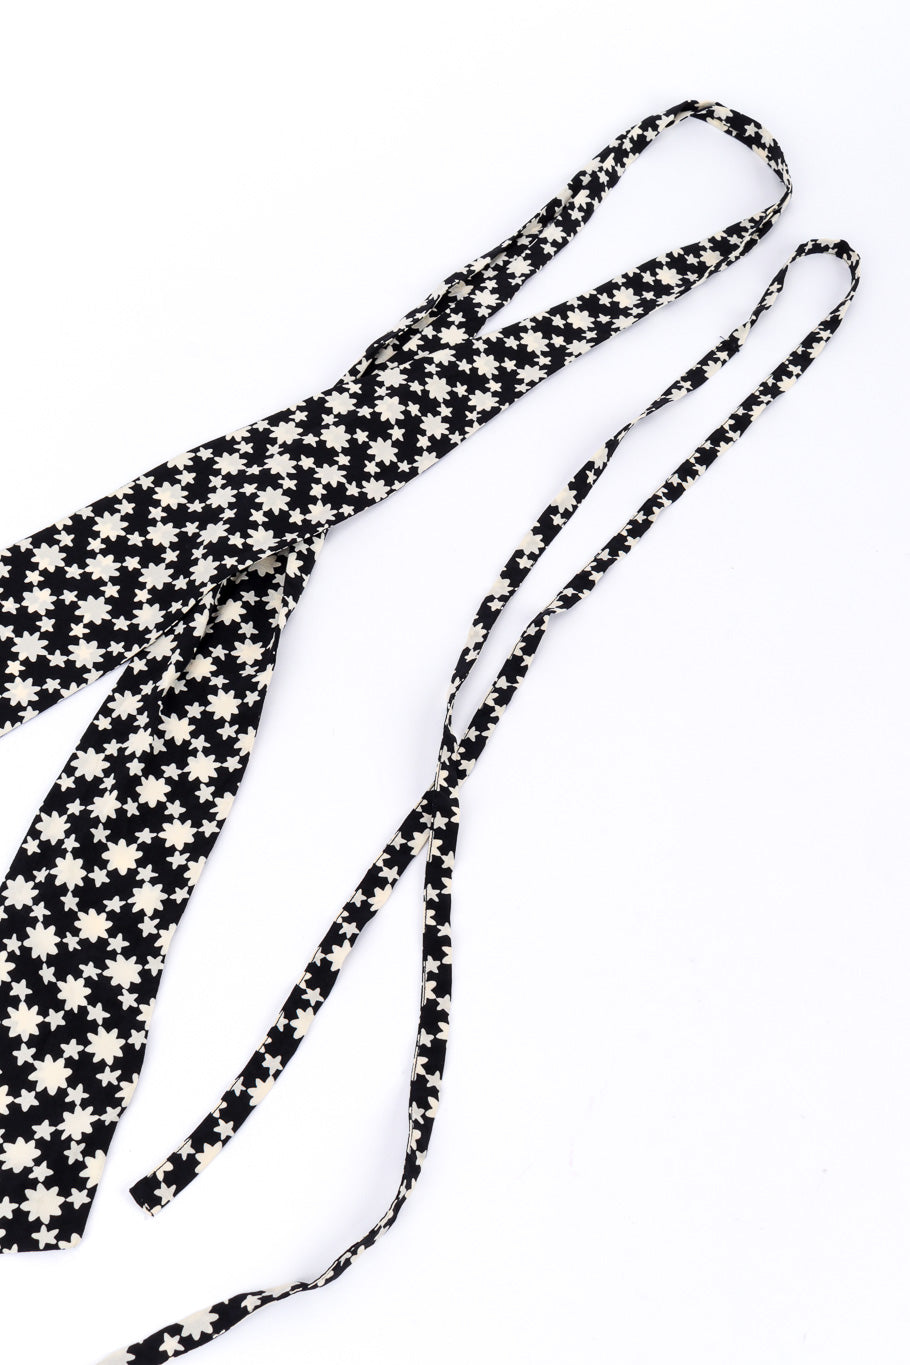 Star print blouse by Yves Saint Laurent ties @recessla